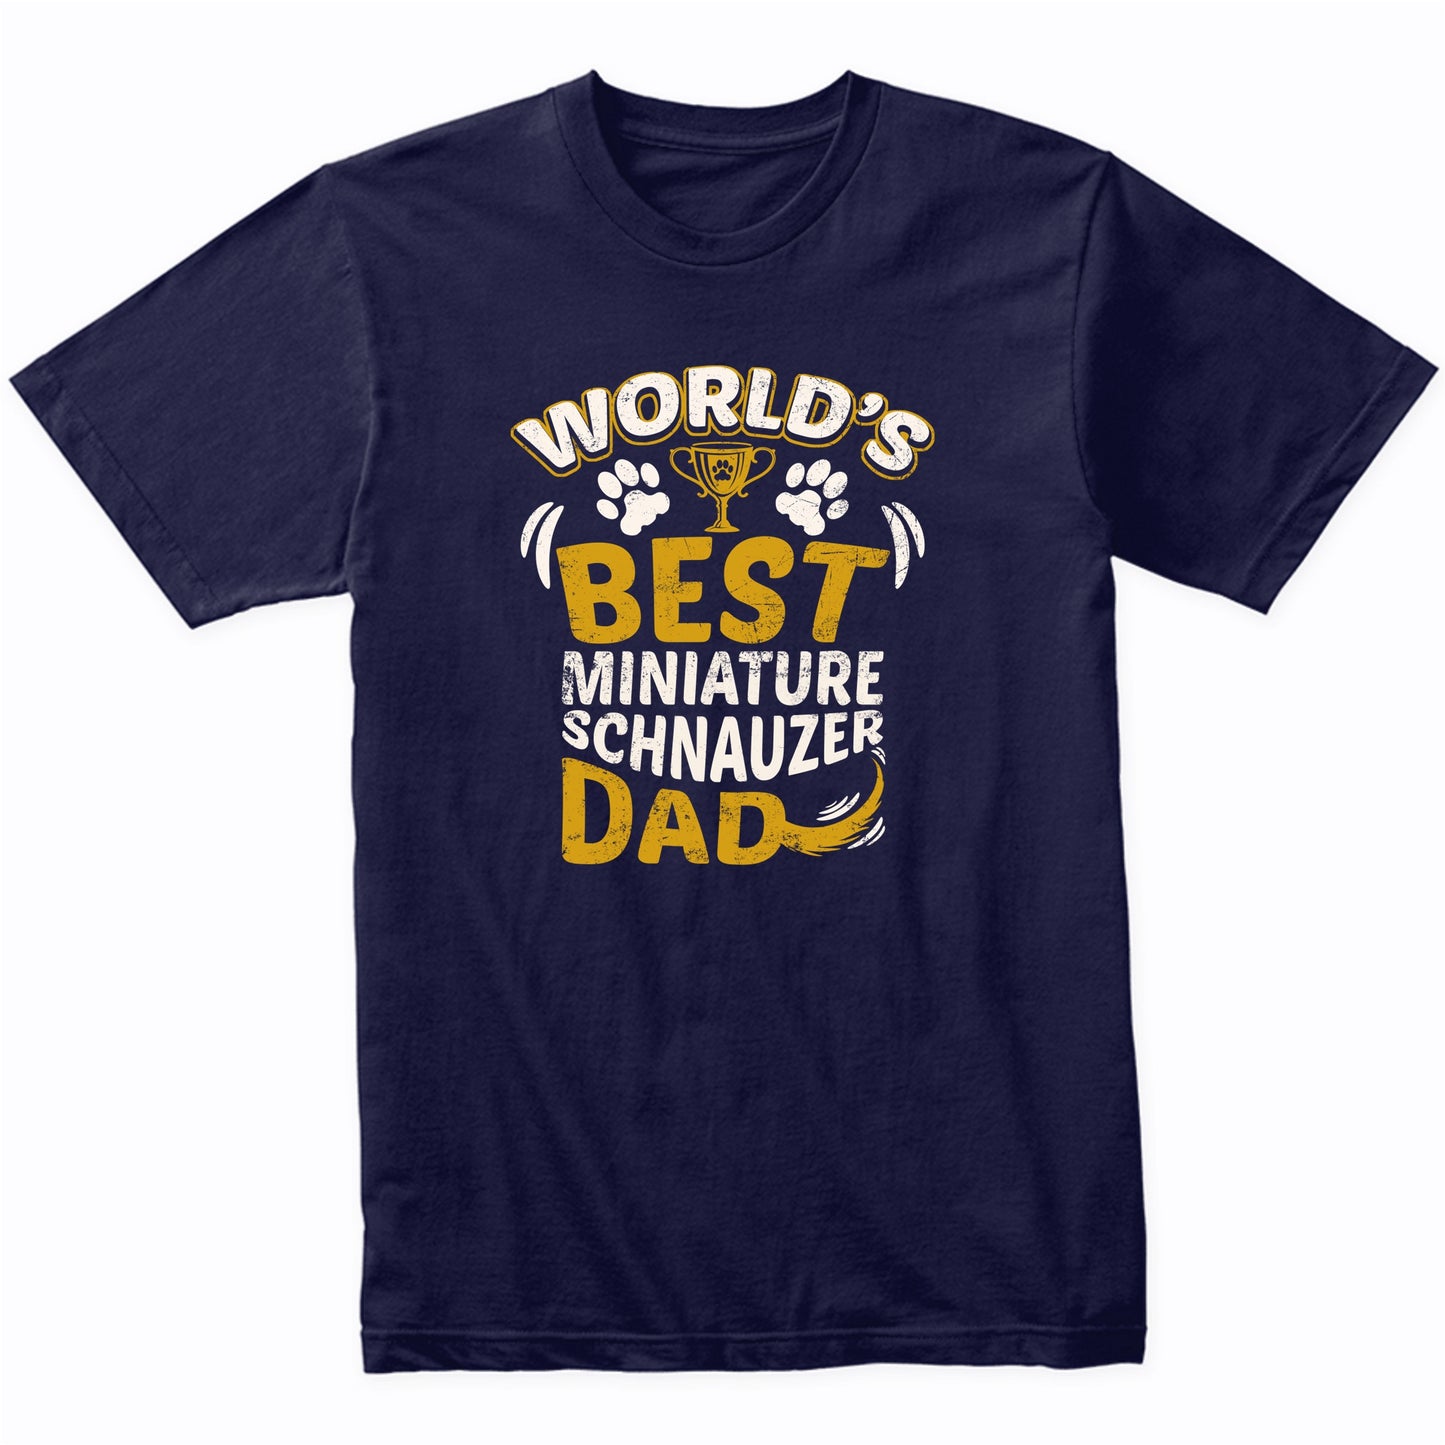 World's Best Miniature Schnauzer Dad Graphic T-Shirt